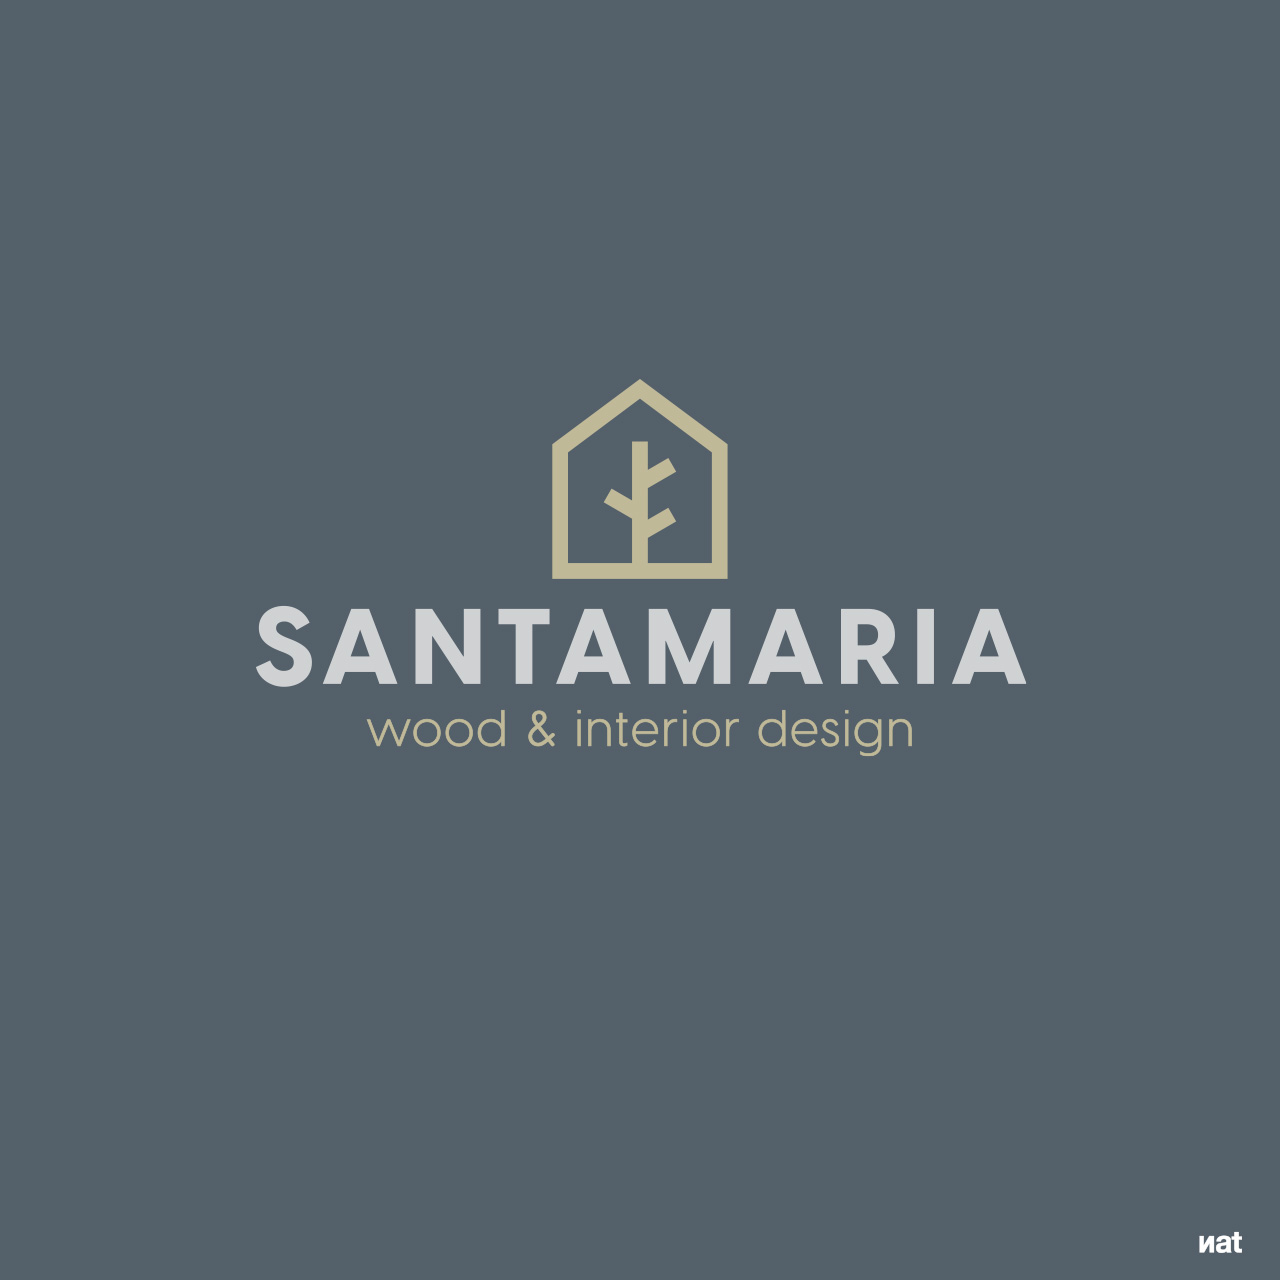 Diseño de imagen corporativa para la marca Santamaria. Nat Estudi.